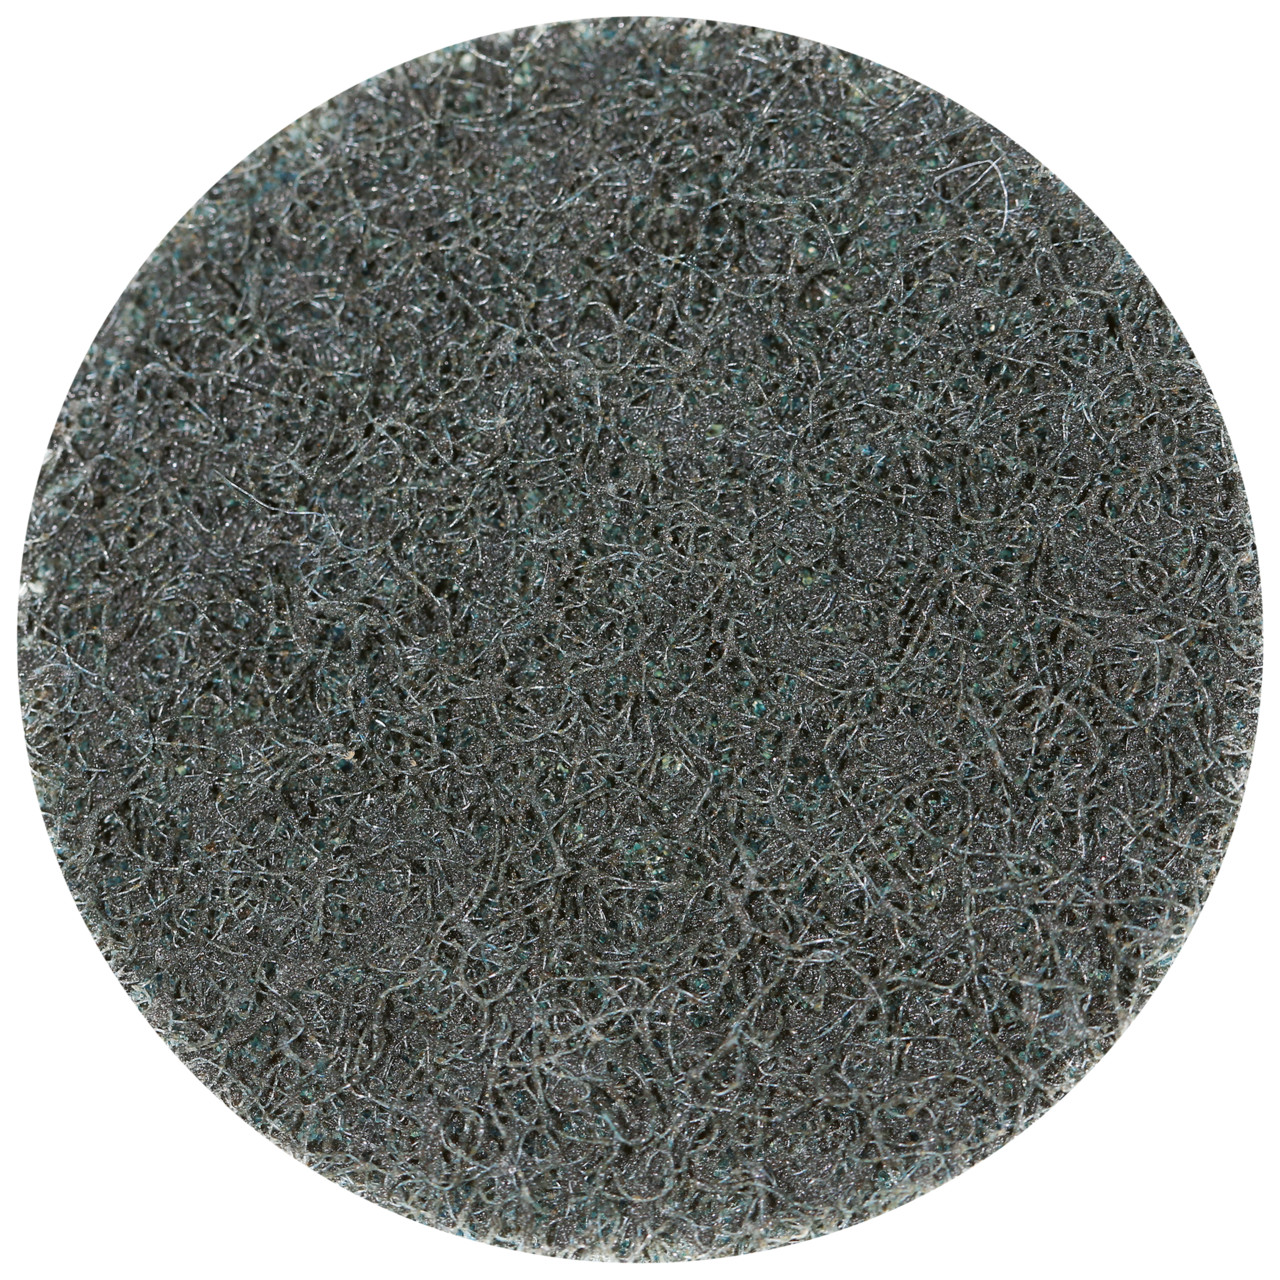 Tyrolit SCM QUICK CHANGE DISC Dimensione 75xS Per acciaio, acciaio inox, metalli non ferrosi, plastica e legno, MEDIO, forma: QDISC, Art. 112593